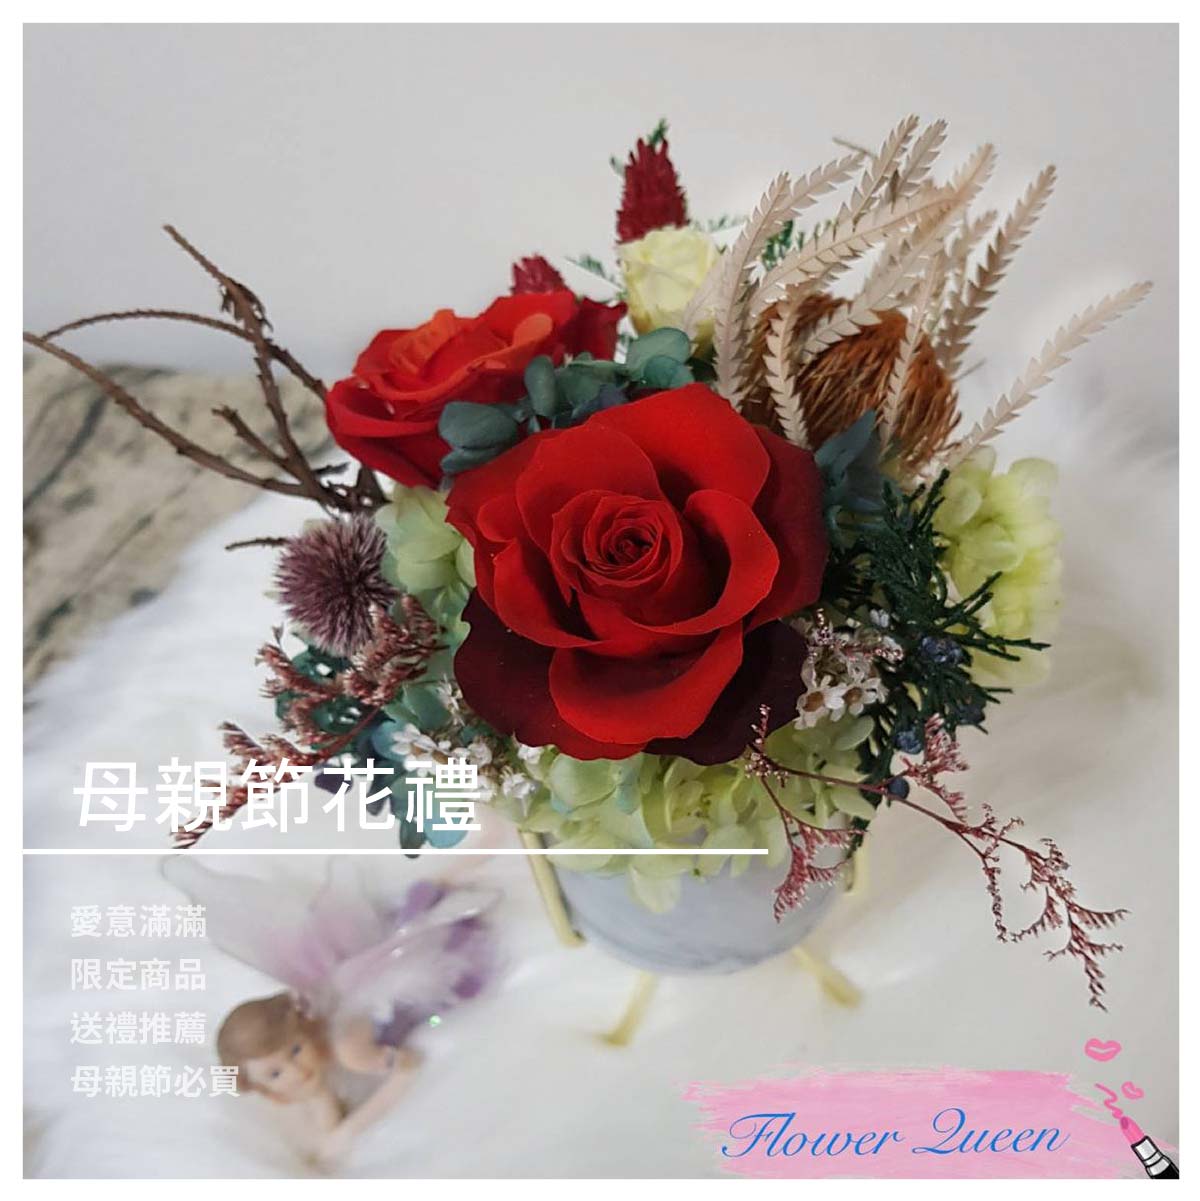 日本大地農園花材，三朵玫瑰花可選擇色系 花器 8*17 花皇后 品牌故事 ♥【傳遞幸福】是花皇后的工作理念。 因為幸福總是不經意地降臨… 希望每個人都能抓住那一瞬間的幸福… ♥歡迎學校/社區/公司社團